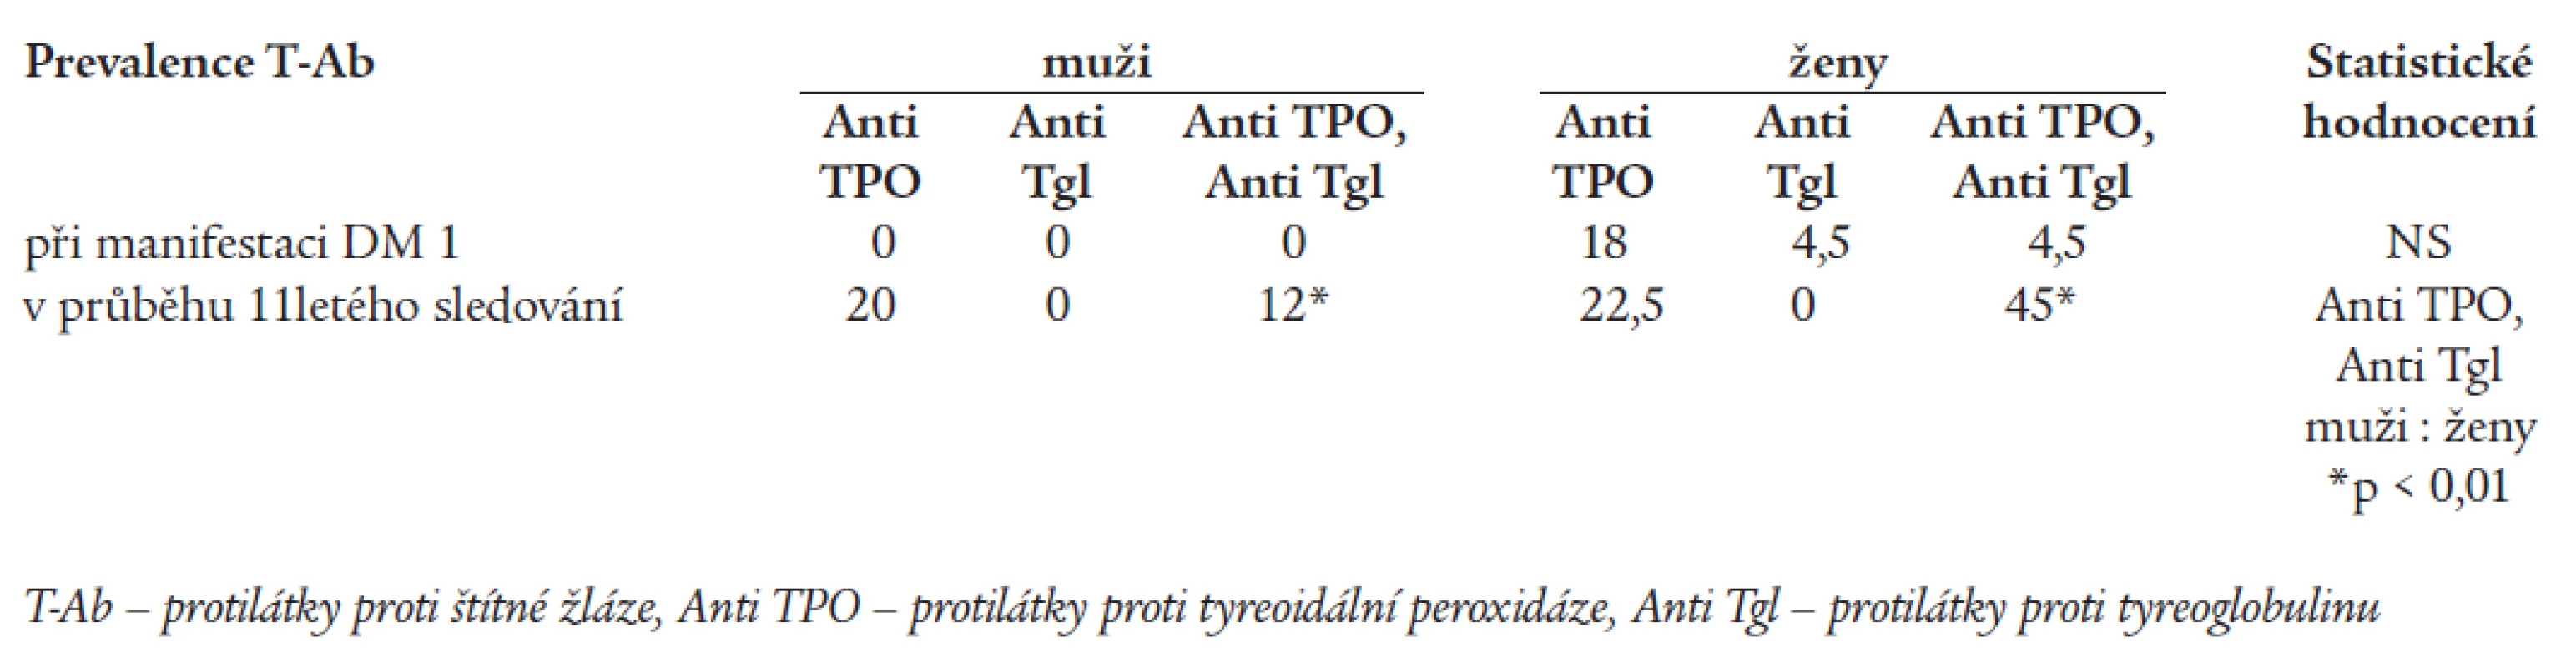 Prevalence protilátek proti štítné žláze v % při manifestaci DM a v průběhu 11letého sledování.